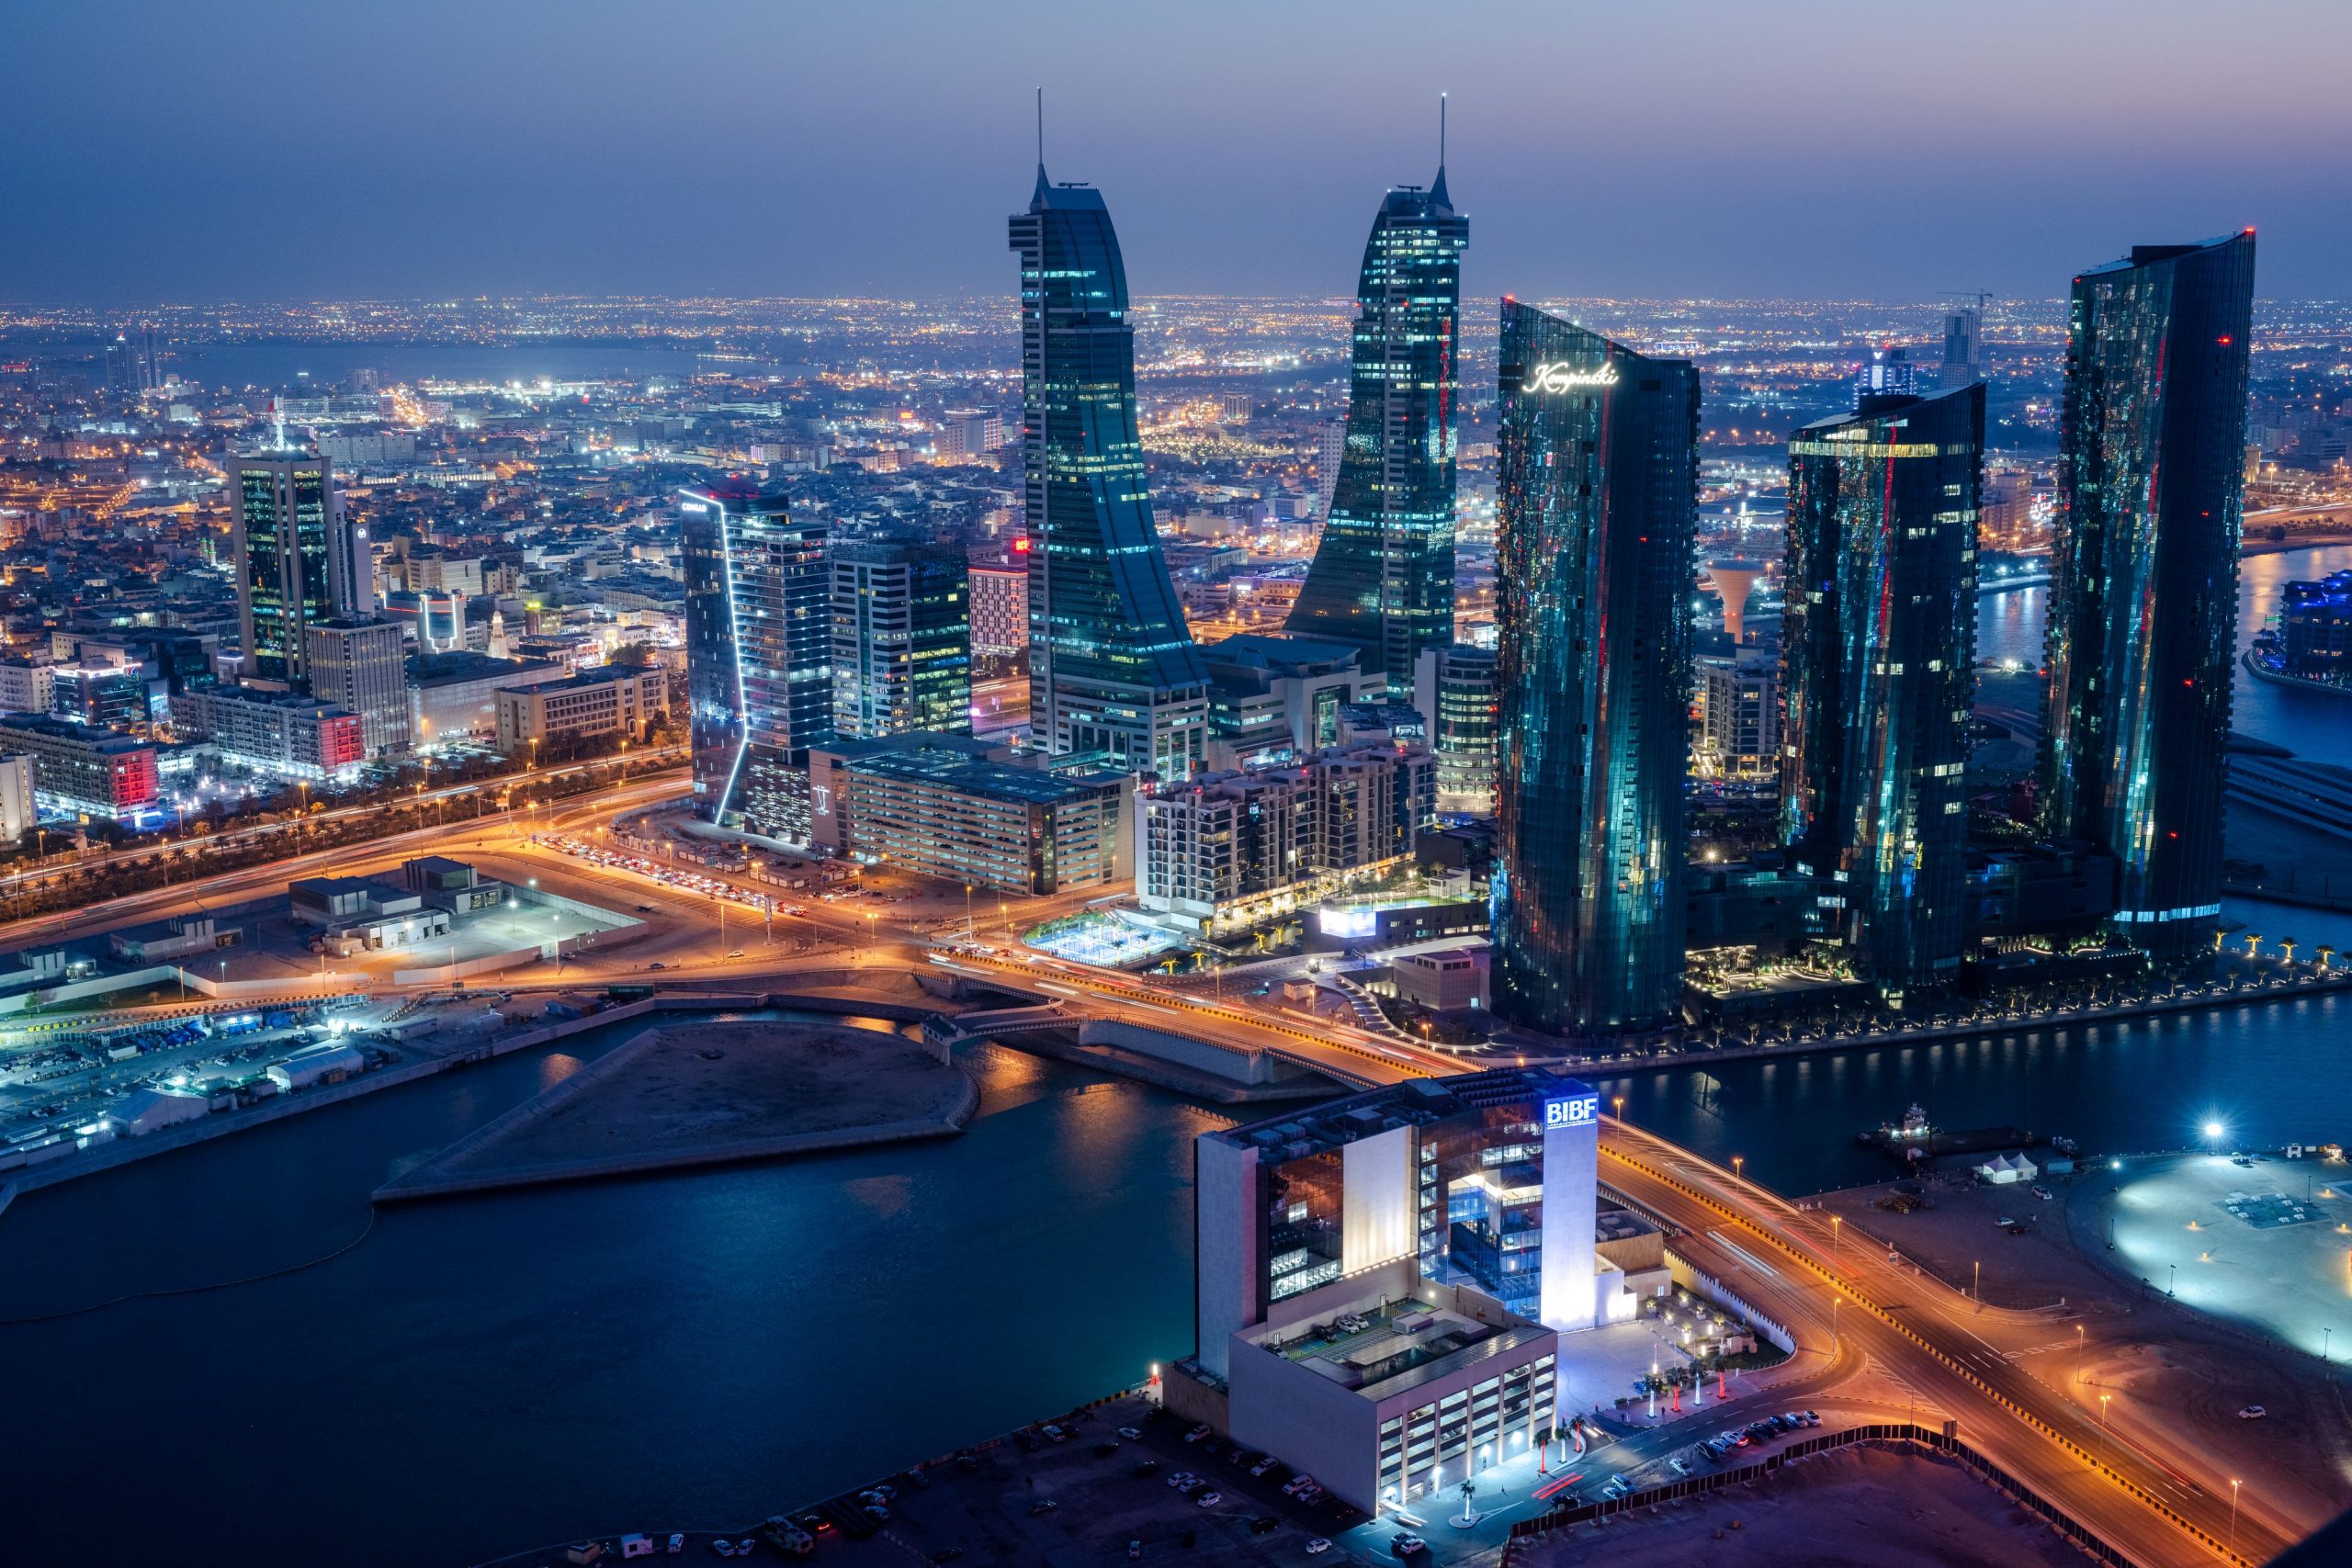 للسنة الثالثة على التوالي البحرين تتصدر دول الشرق الأوسط وشمال أفريقيا في الحرية المالية والتجارية والاستثمار